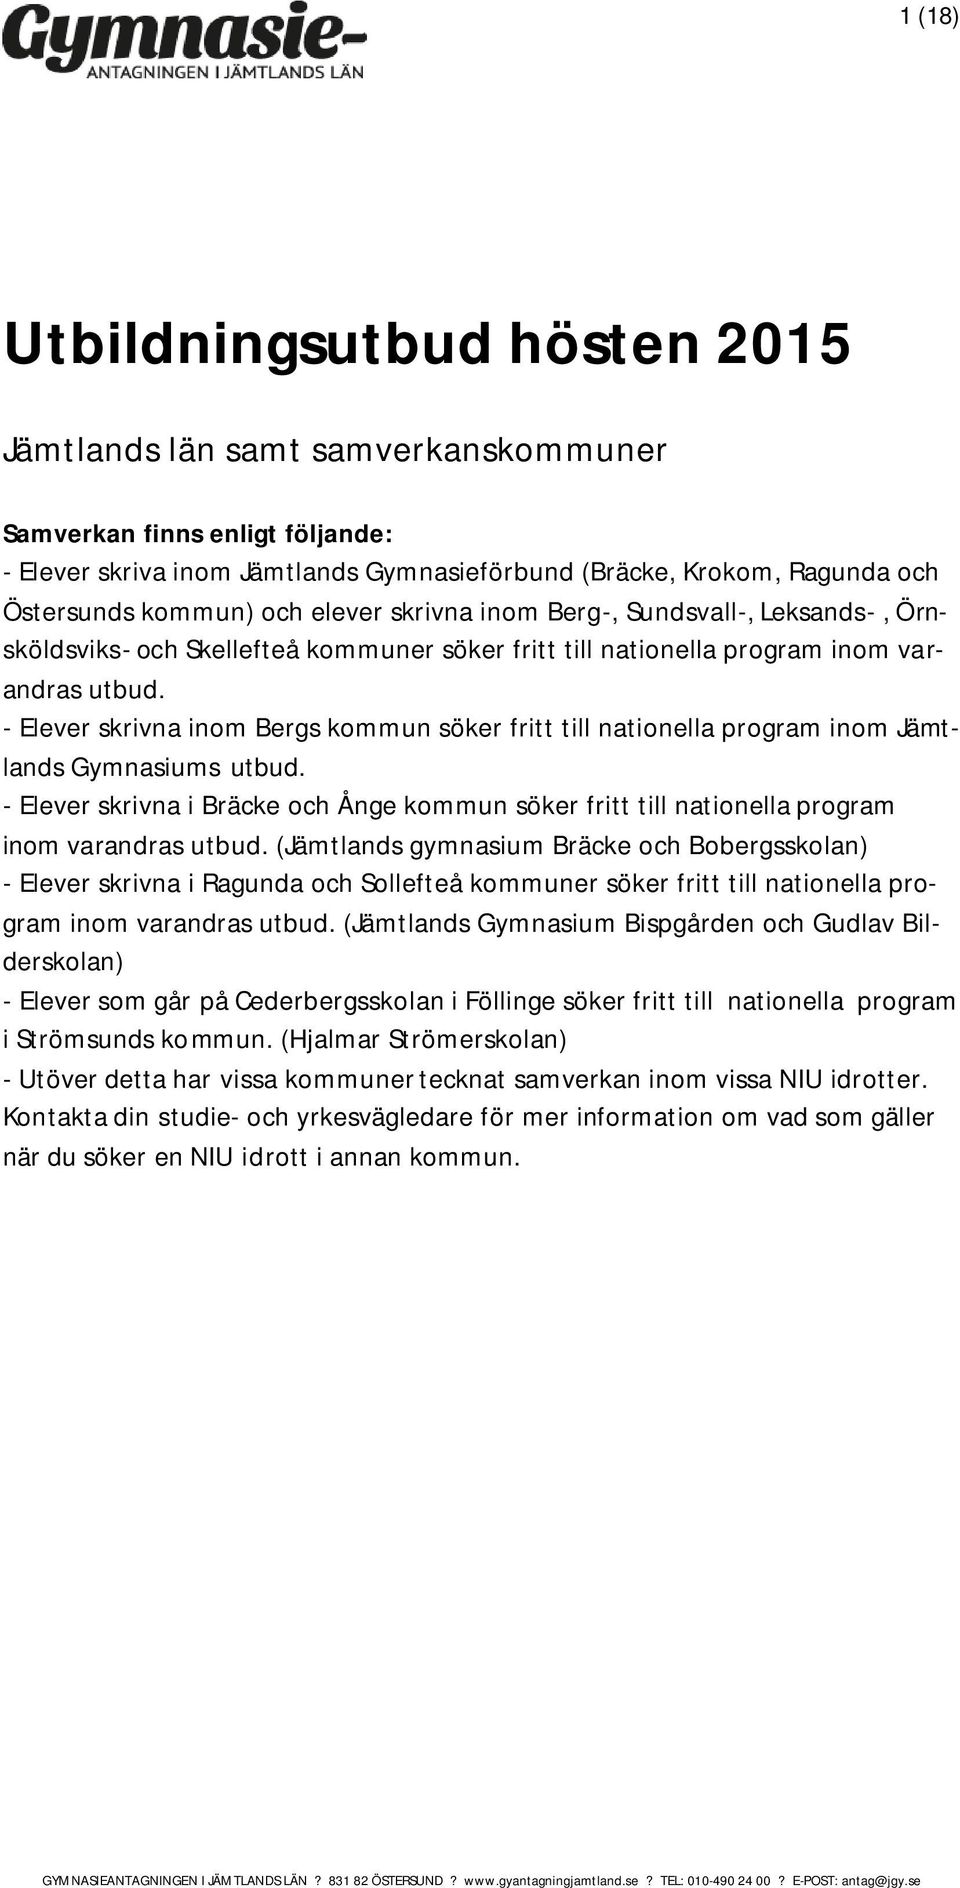 - Elever skrivna inom Bergs kommun söker fritt till nationella program inom Jämtlands Gymnasiums utbud.